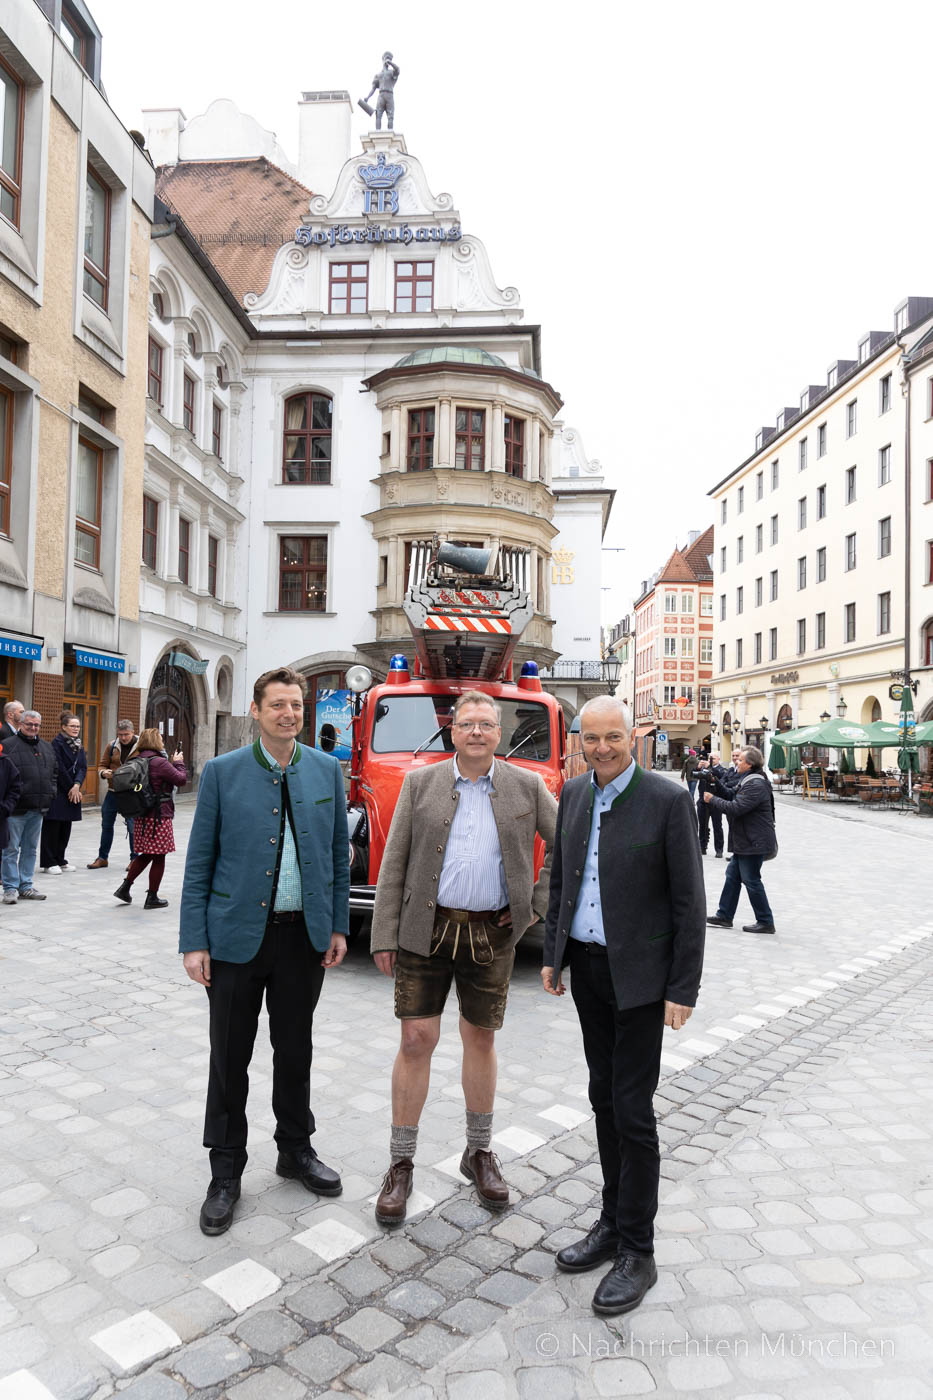 Hofbräuhaus München gedenkt dem Brand der Bayerischen Staatsoper vor 200 Jahren